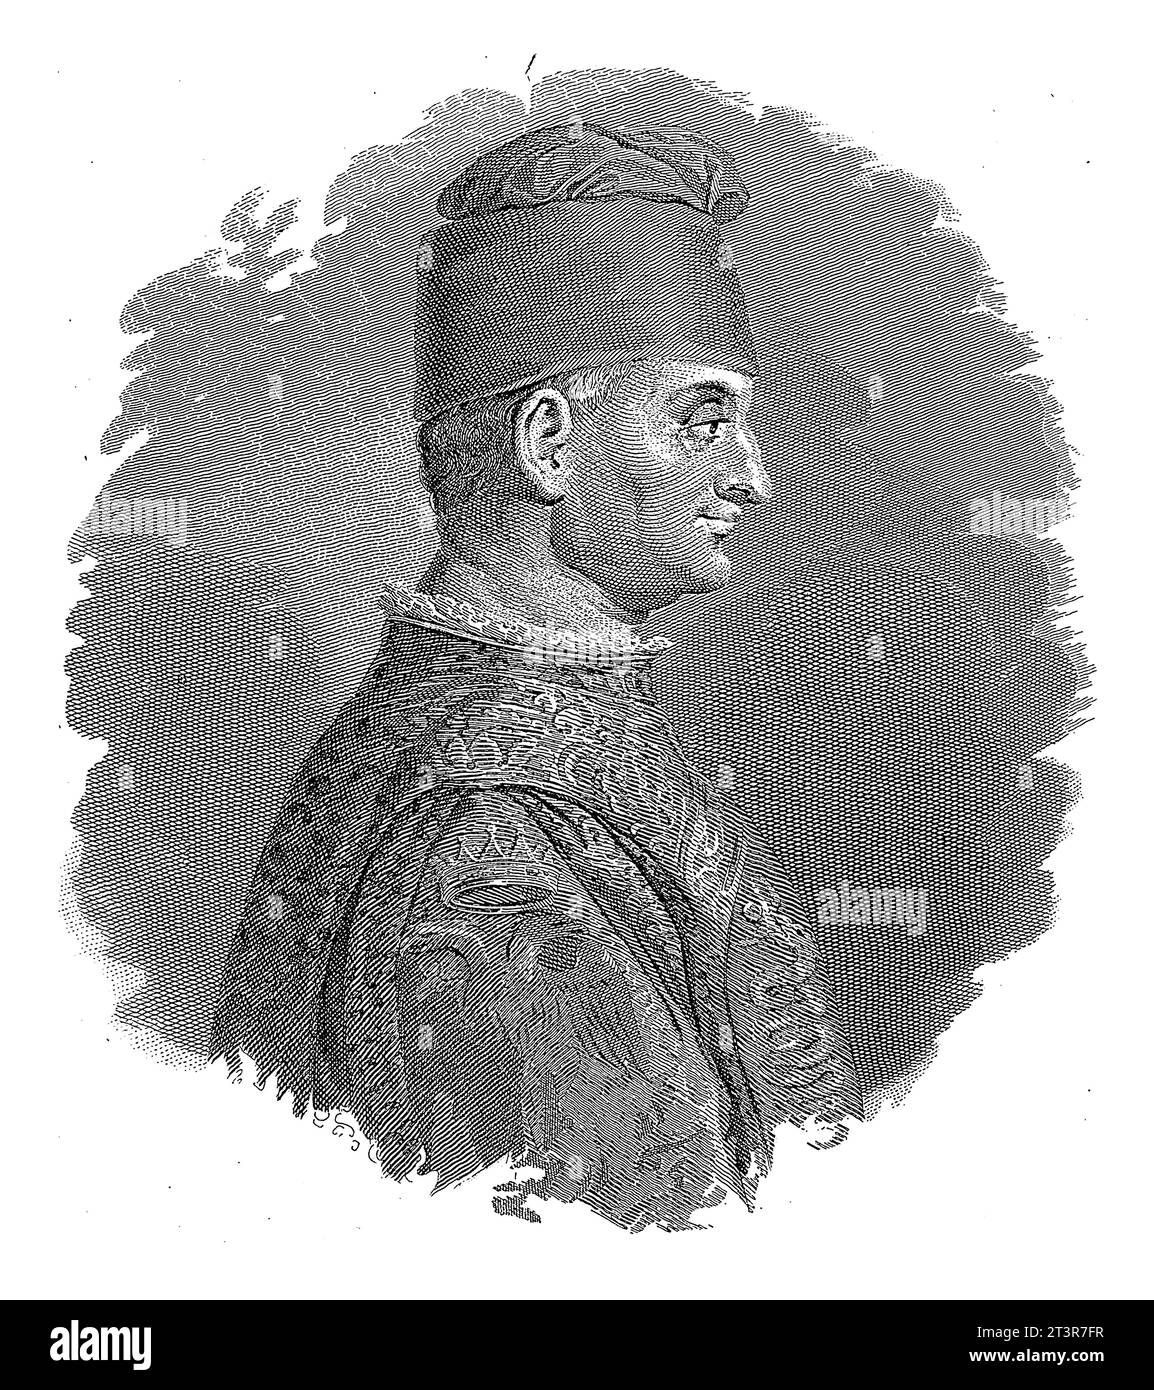 Ritratto di Filippo Maria Visconti, duca di Milano, Francesco Clerici, 1855 - 1865, inciso vintage. Foto Stock